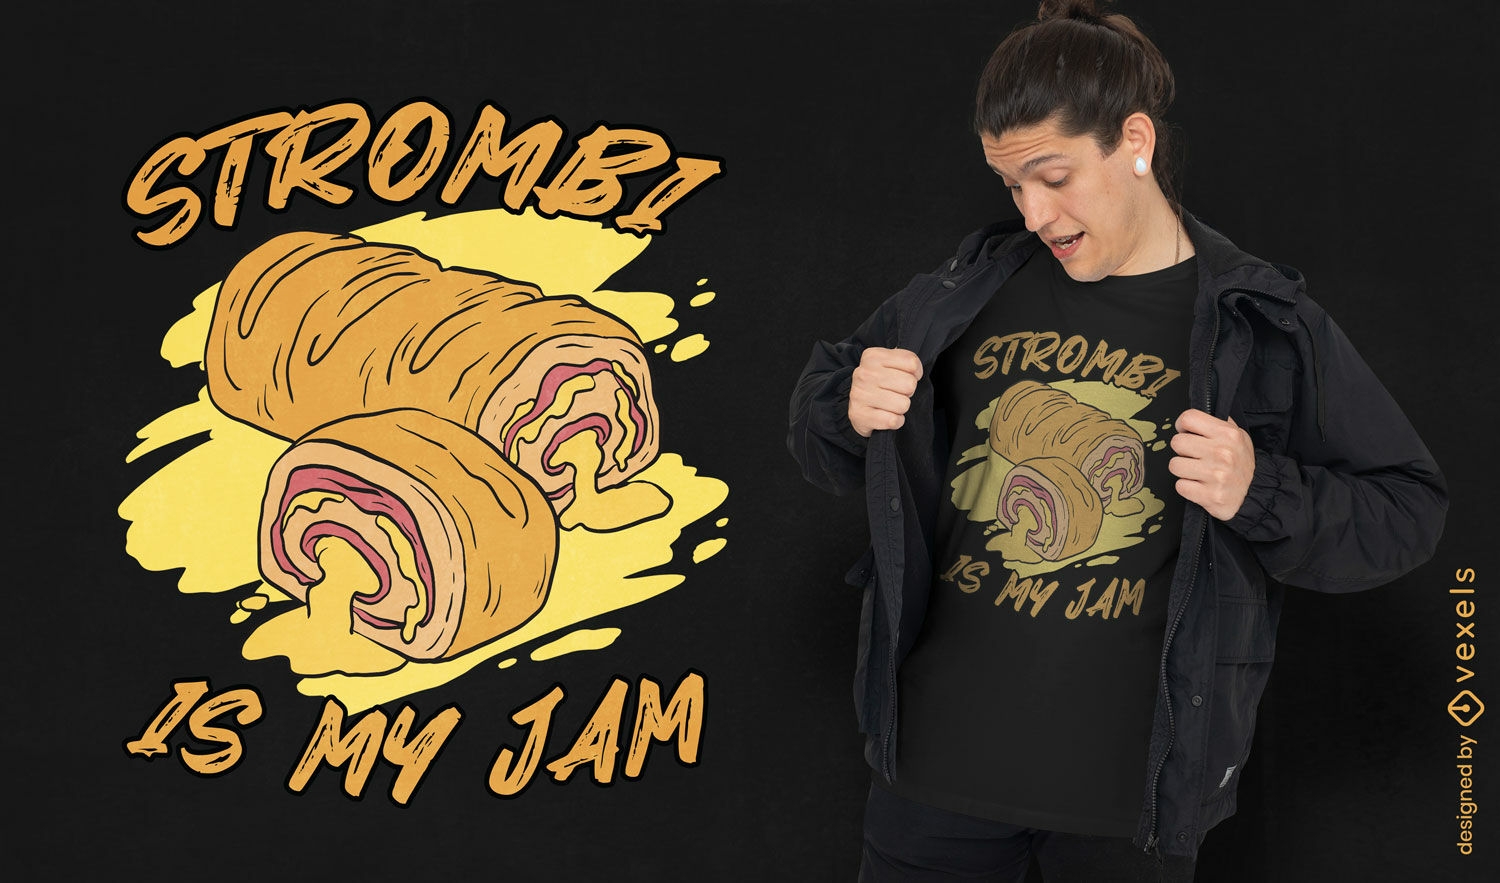 Strombi ist mein Jam-T-Shirt-Design